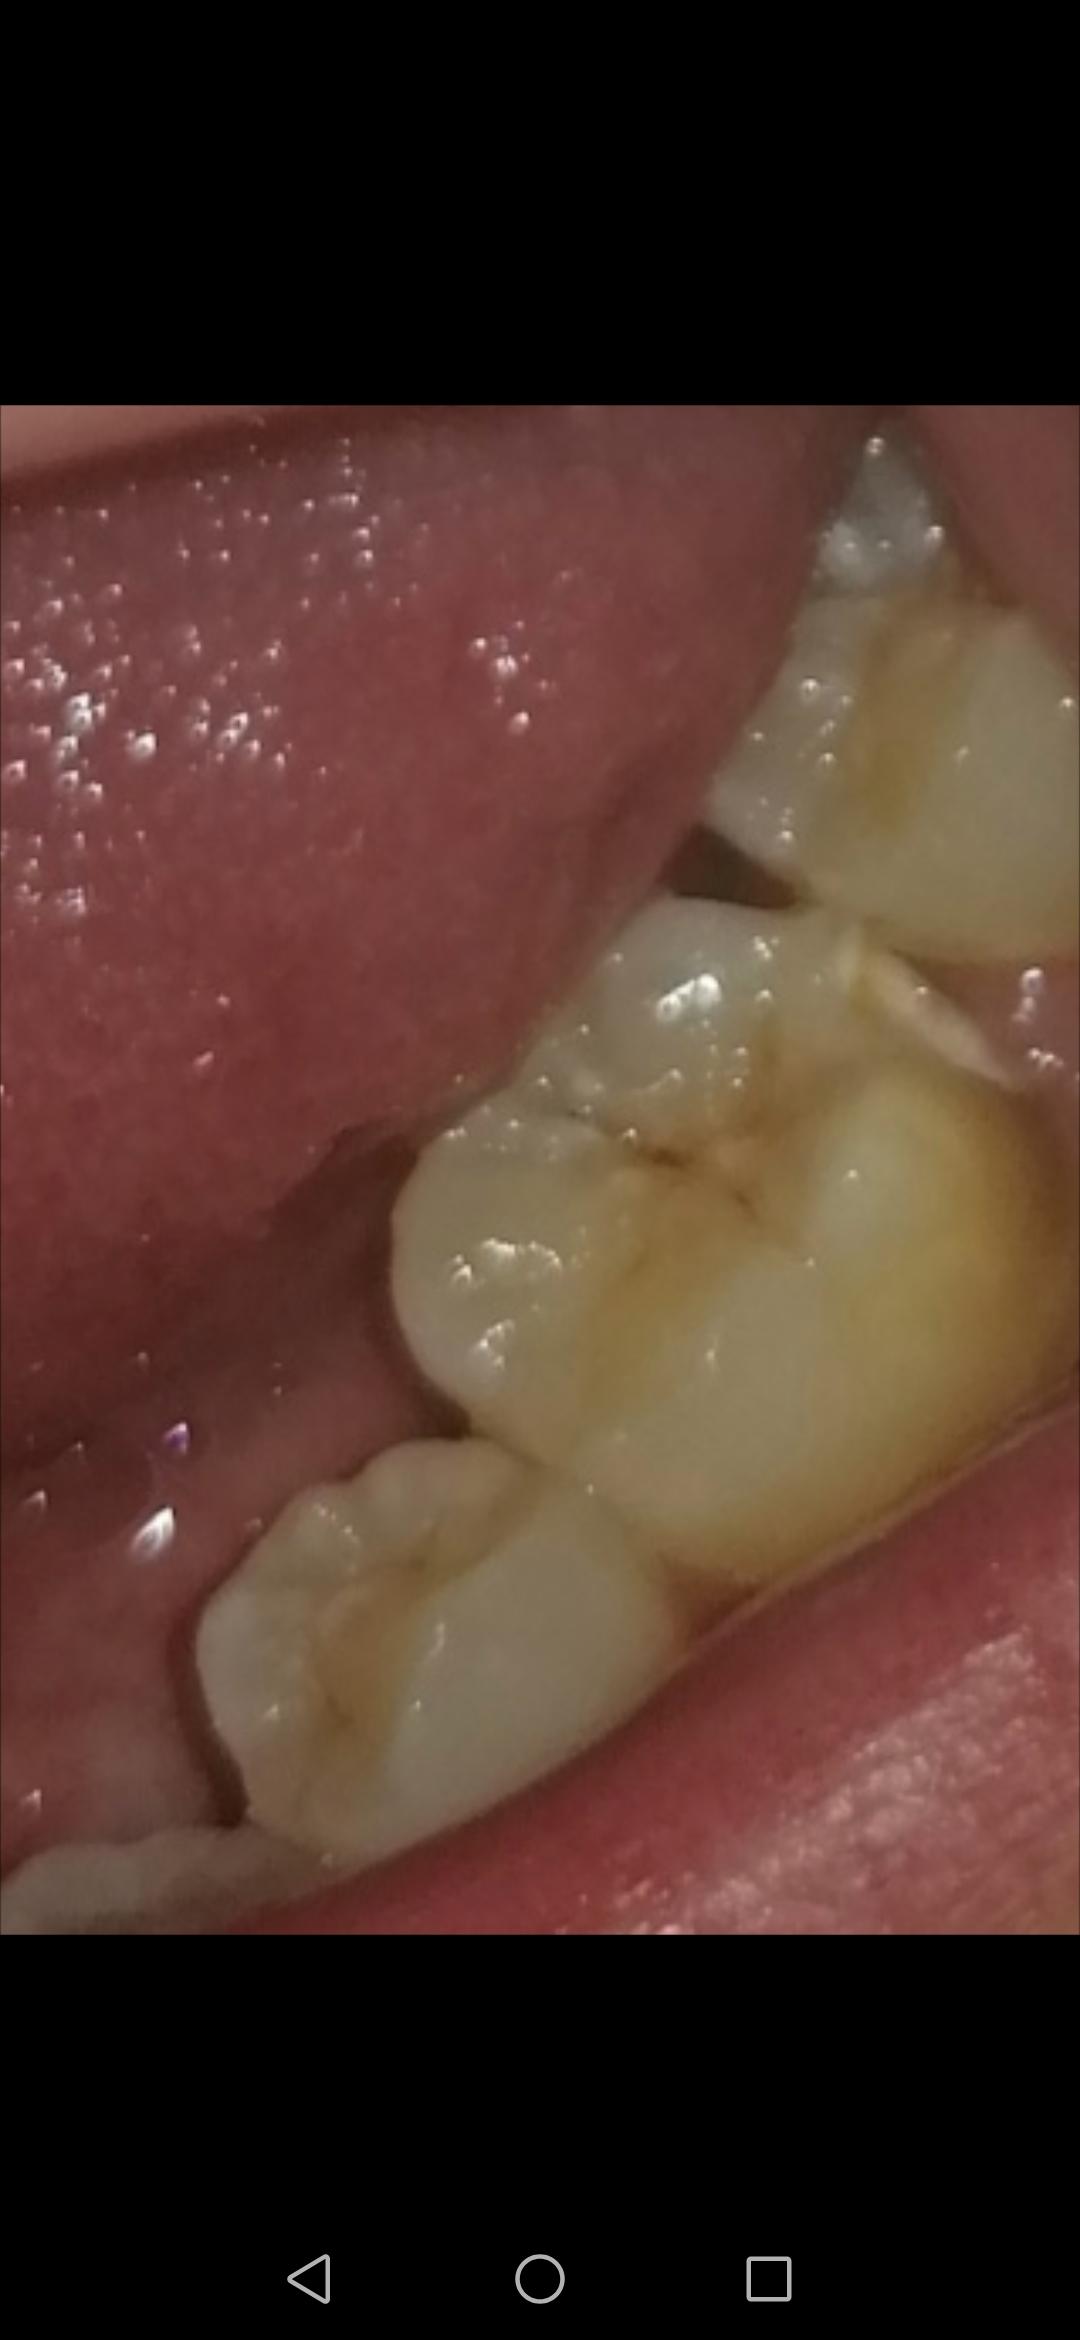 Zahn Abgebrochen Zahn Abgebrochen Behandlung Und Kosten 2020 08 07